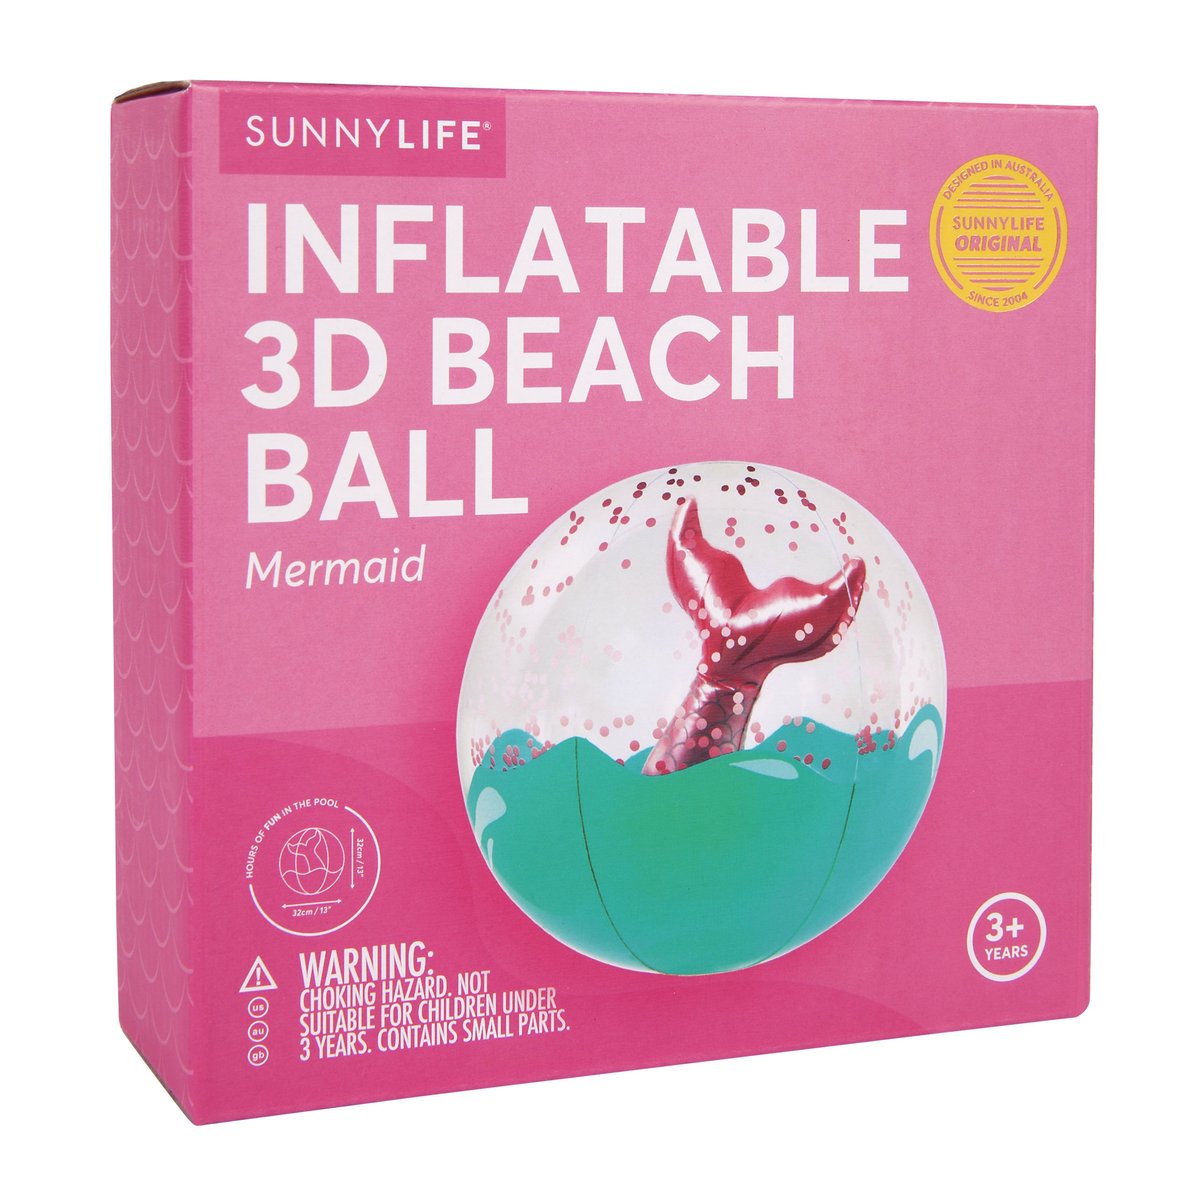 Sunnylife Inflatable 3D Beach Ball 沙灘球 (Mermaid)